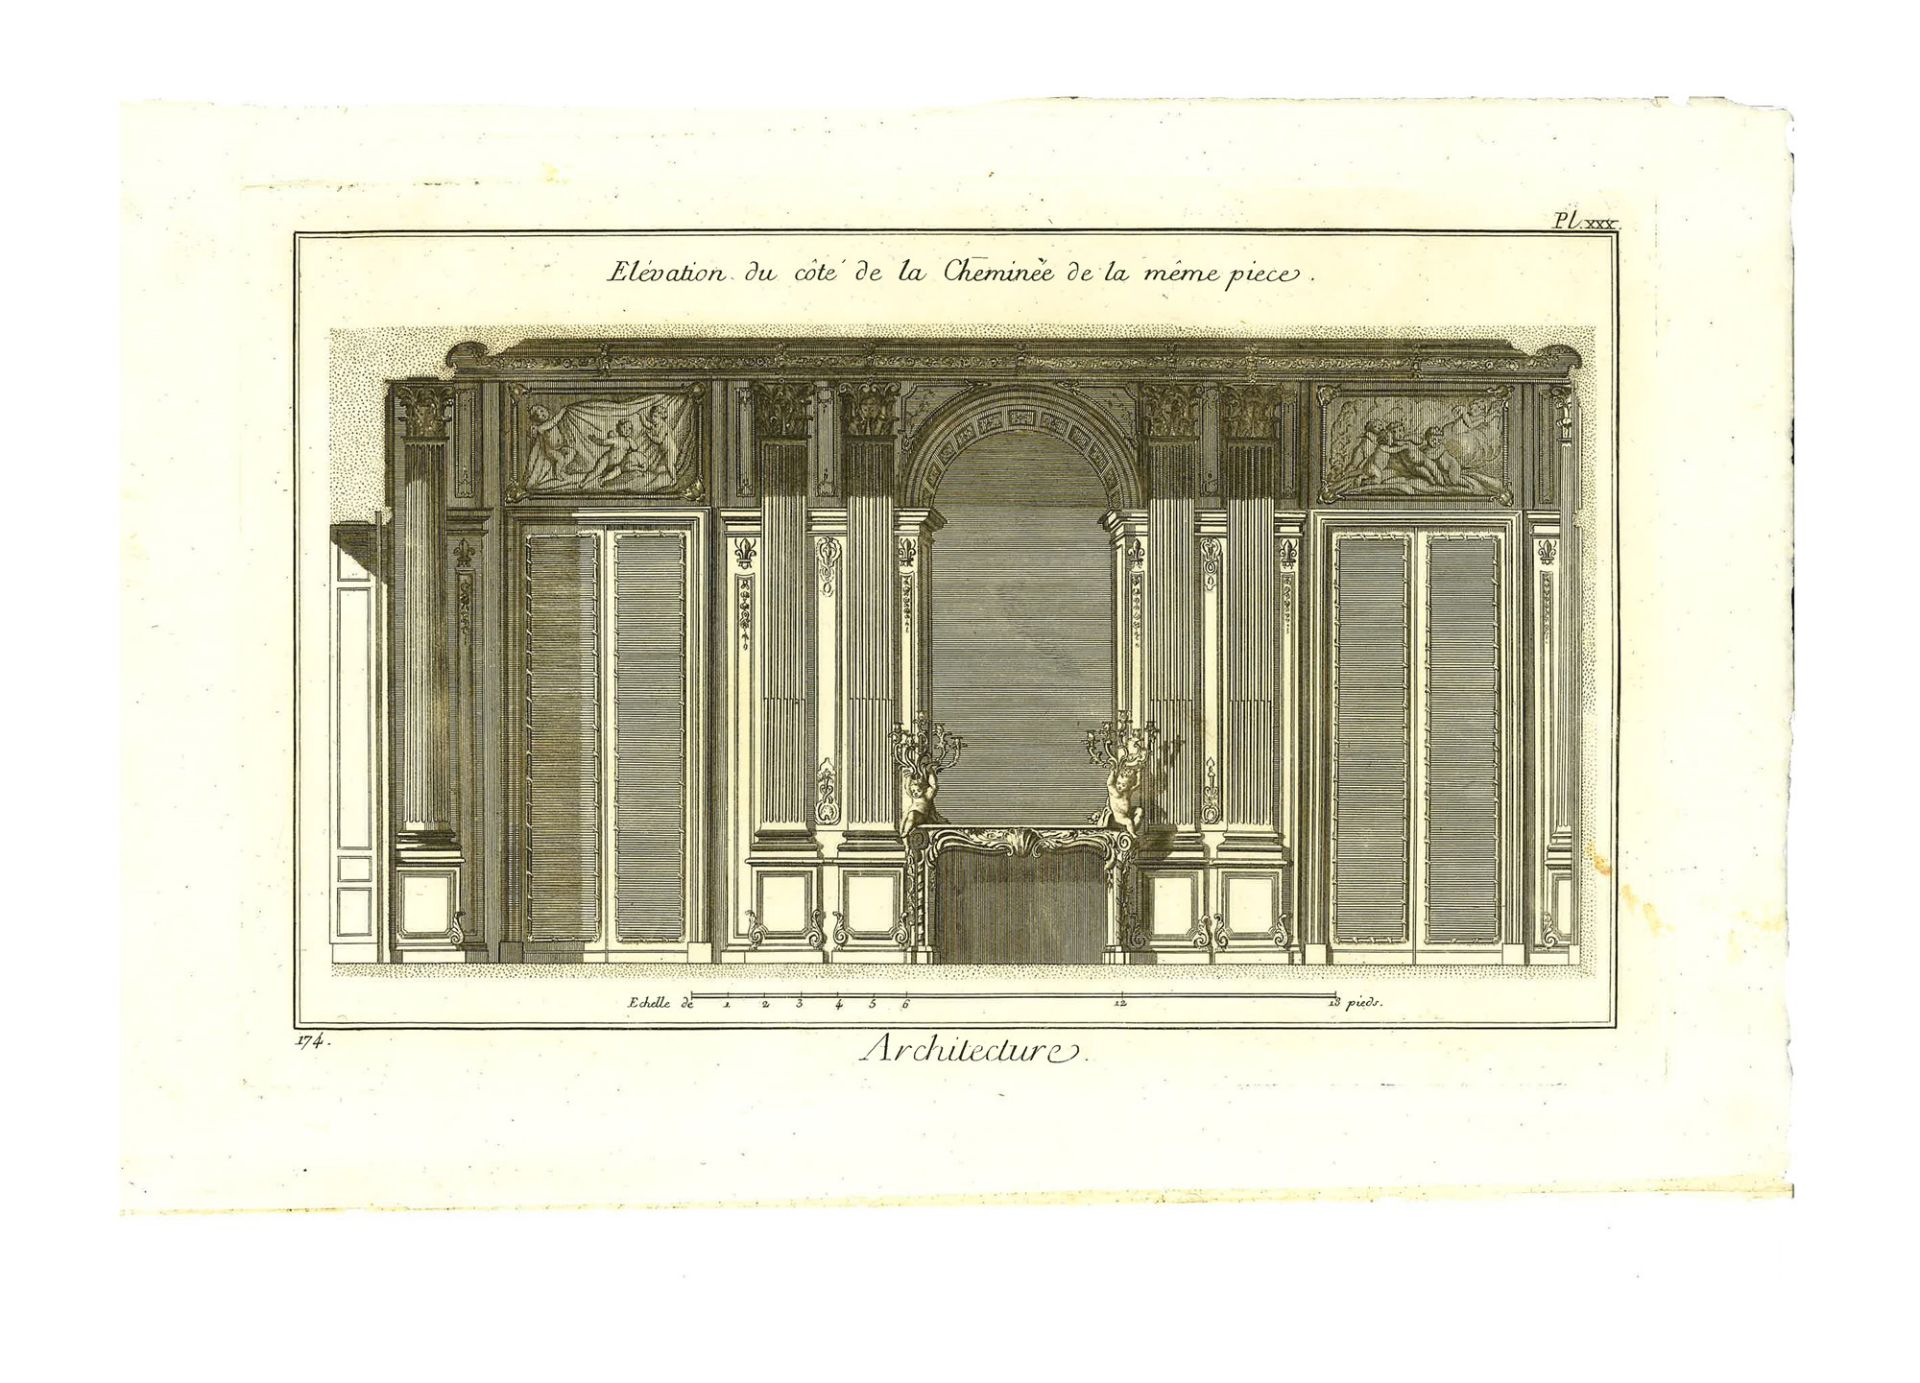 Lotto di tre incisioni dal titolo "Architecture" tratte dall'edizione ginevrina dell' "Encyclopédie,